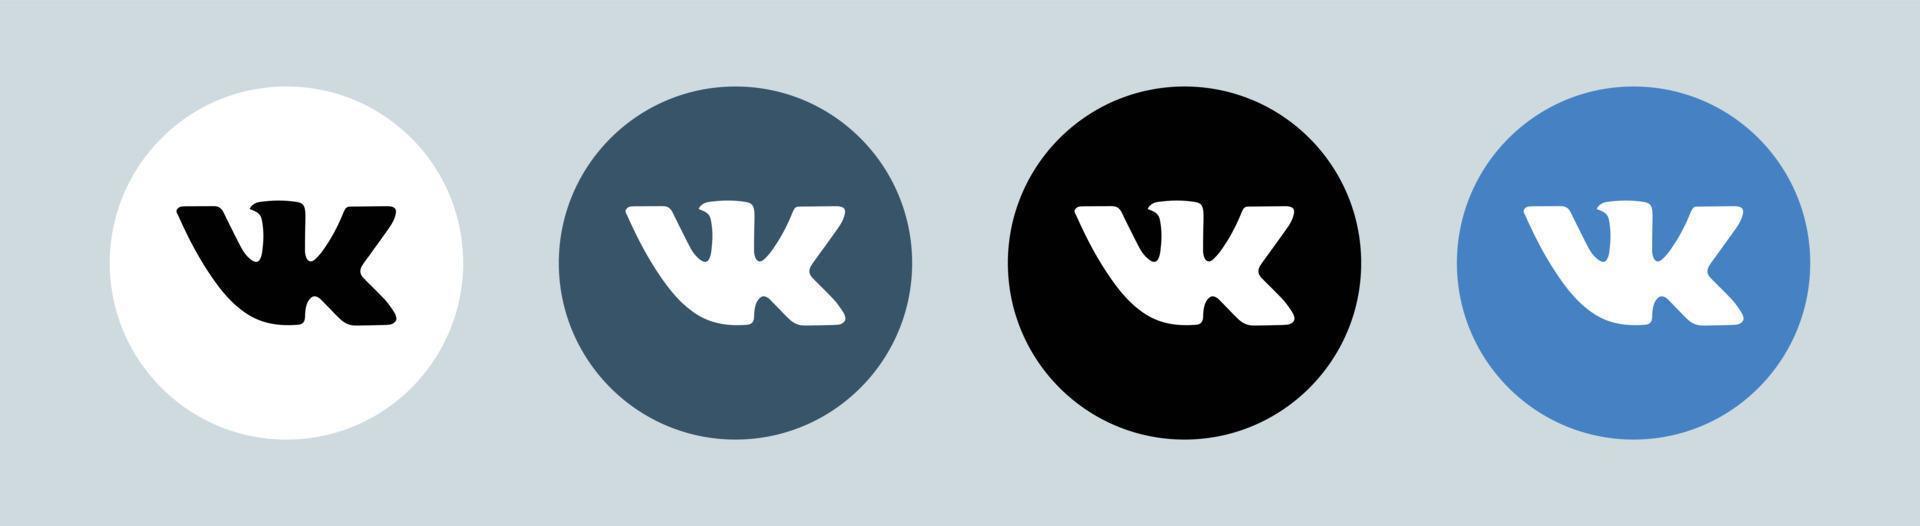 v kontakte logotipo em círculo. ilustração em vetor logotipo de rede social popular.